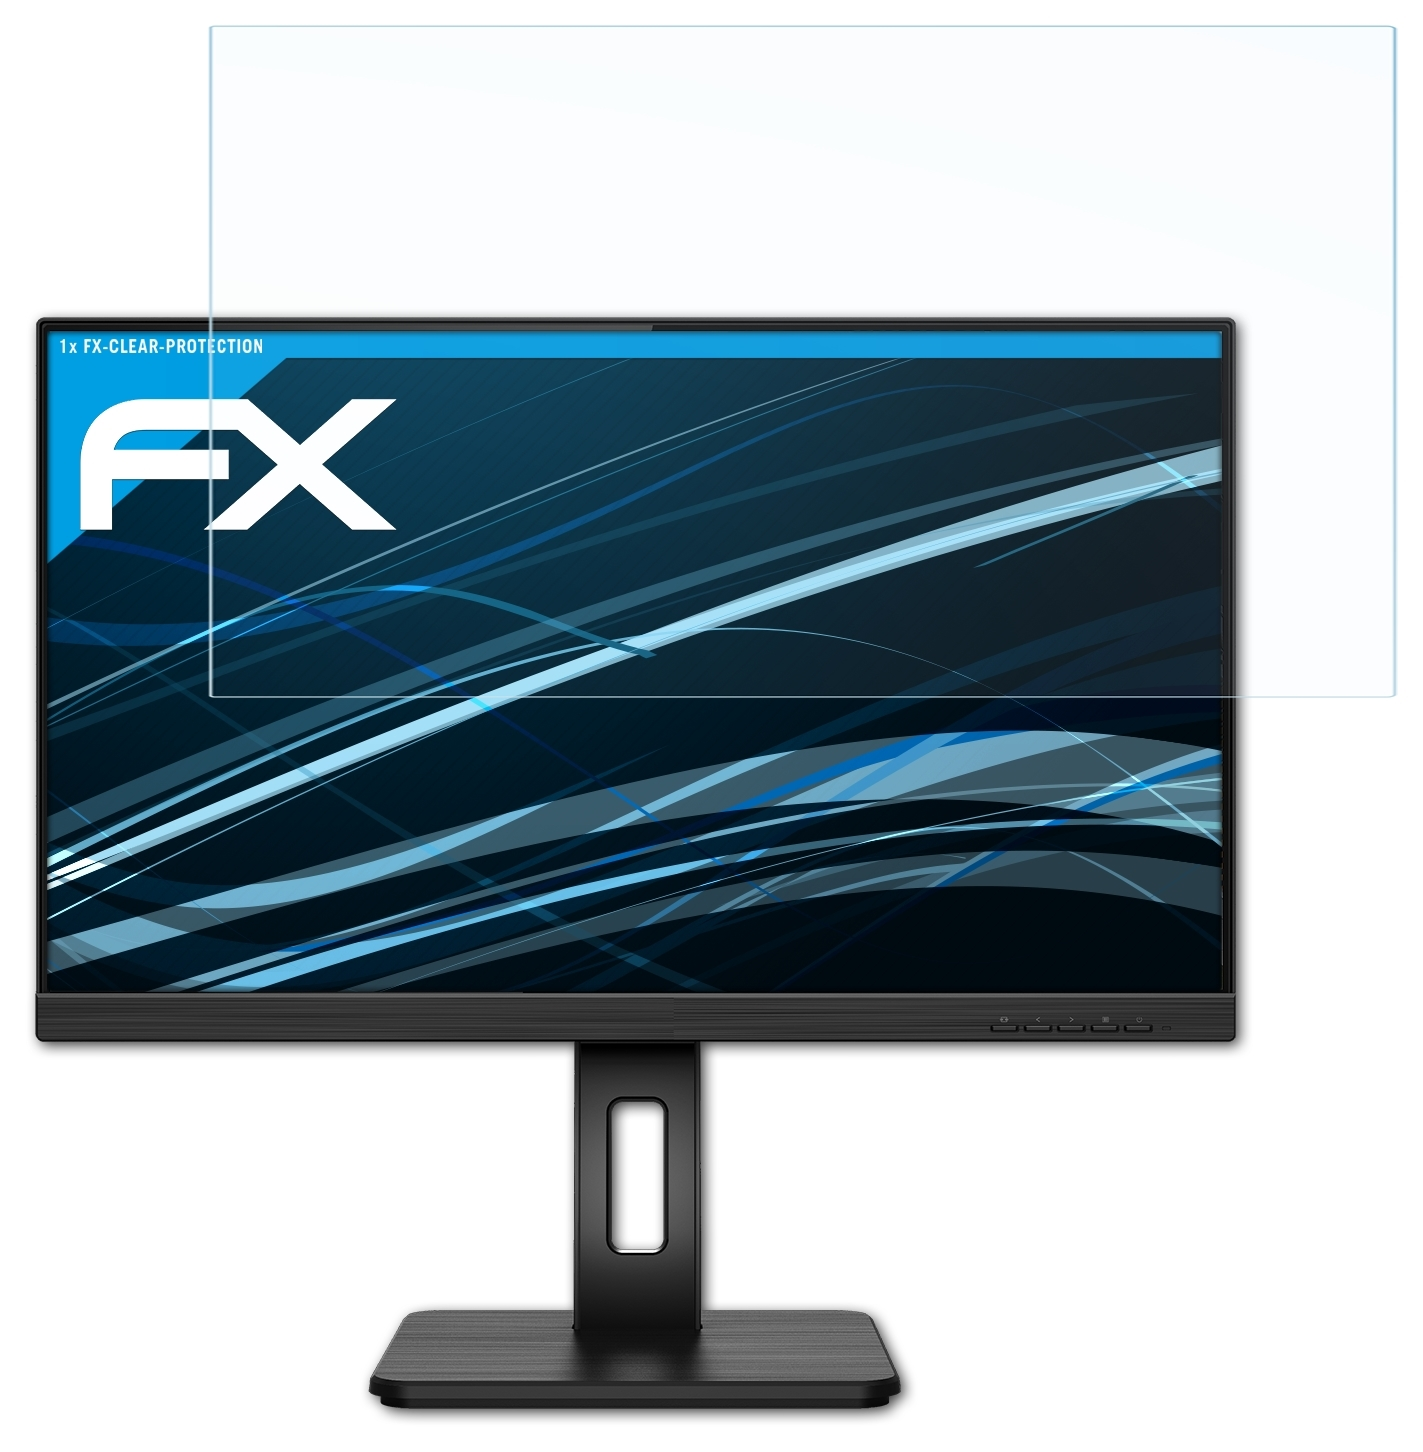 Q24P2Q) ATFOLIX AOC FX-Clear Displayschutz(für